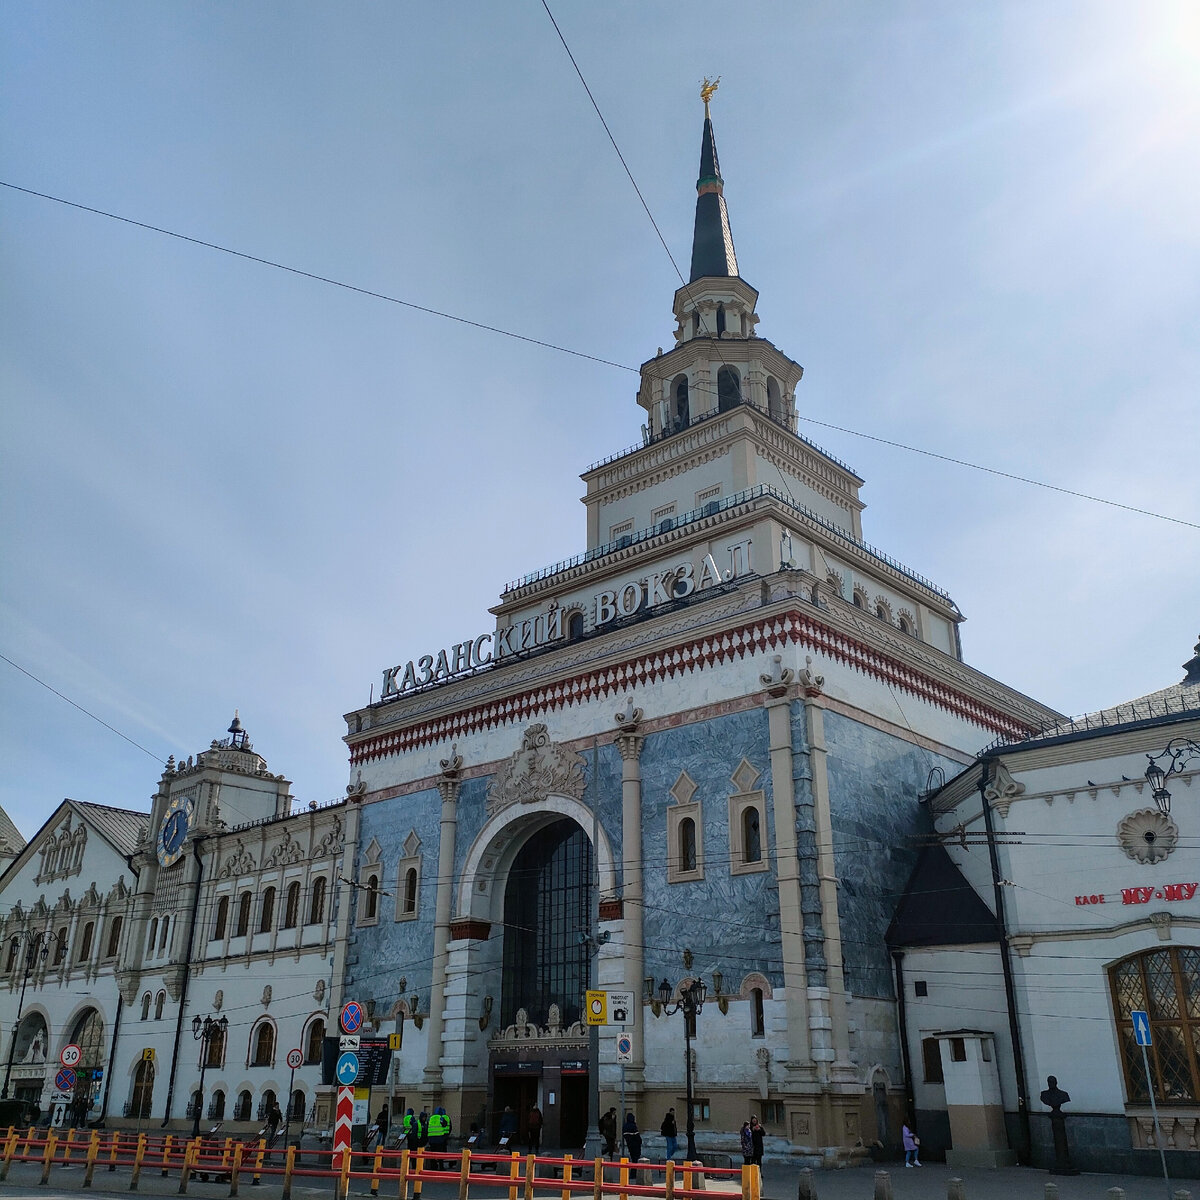 казанский вокзал